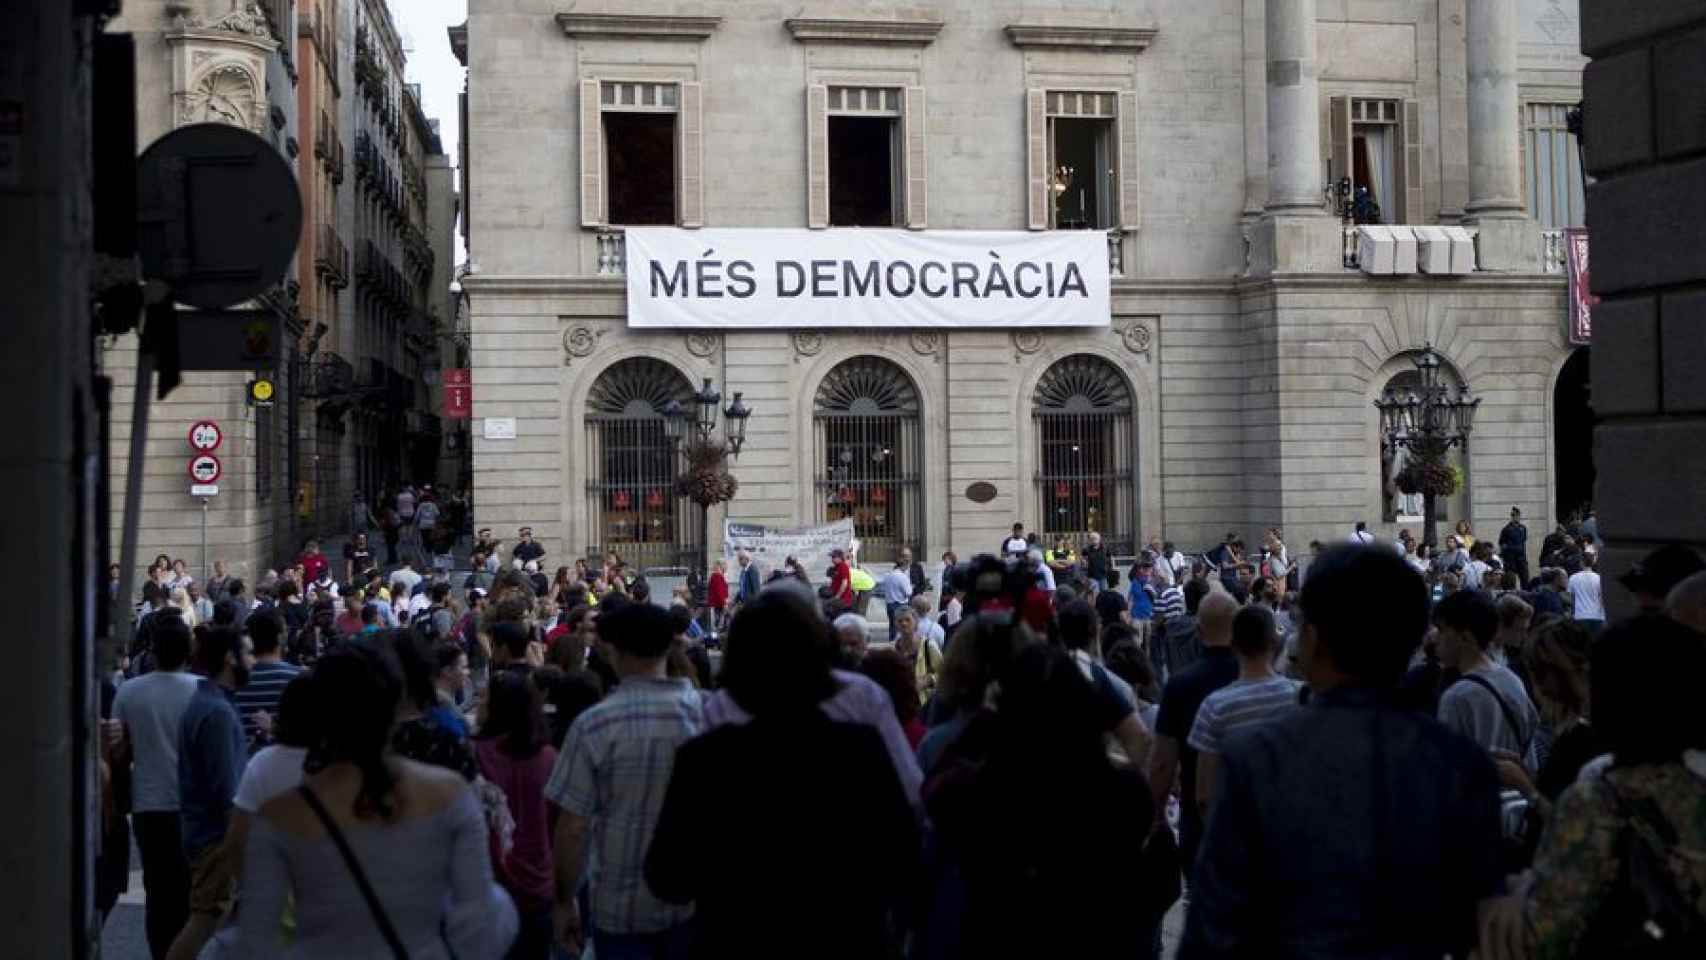 Cartel de 'Més democràcia' en la fachada del Ayuntamiento / EFE